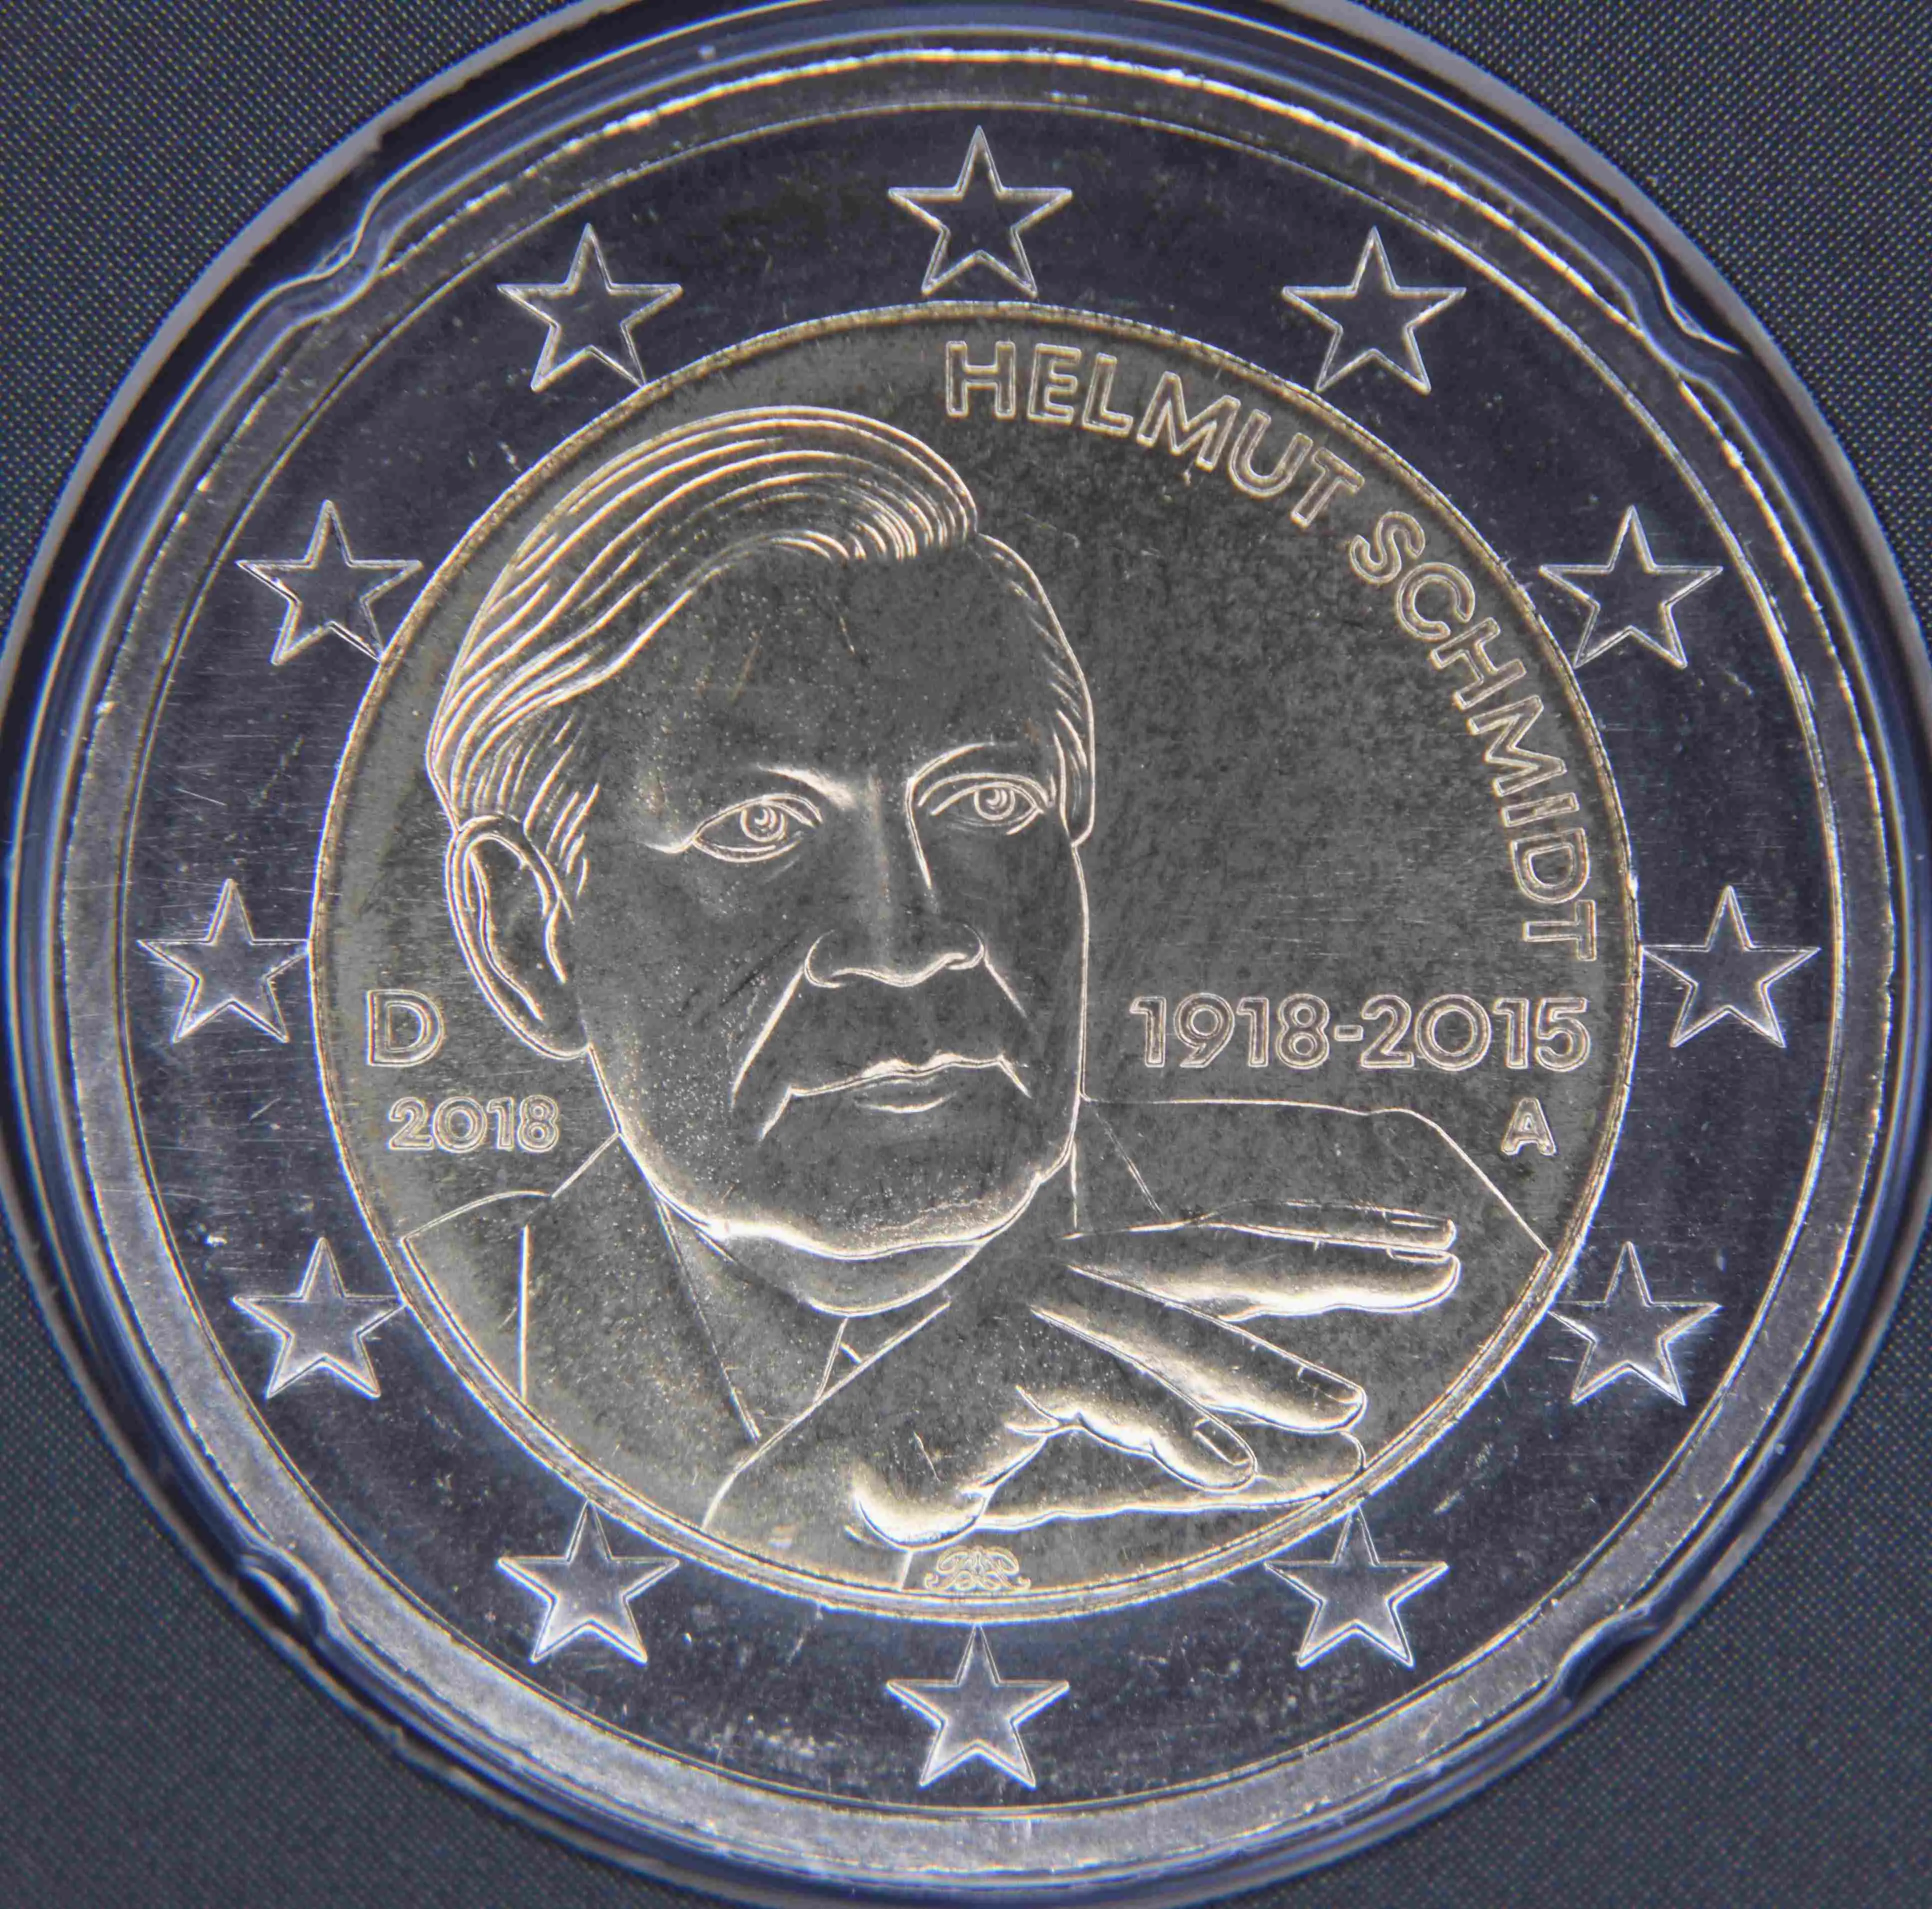 Deutschland 2 Euro Münze 2018 - 100. Geburtstag von Helmut Schmidt - A